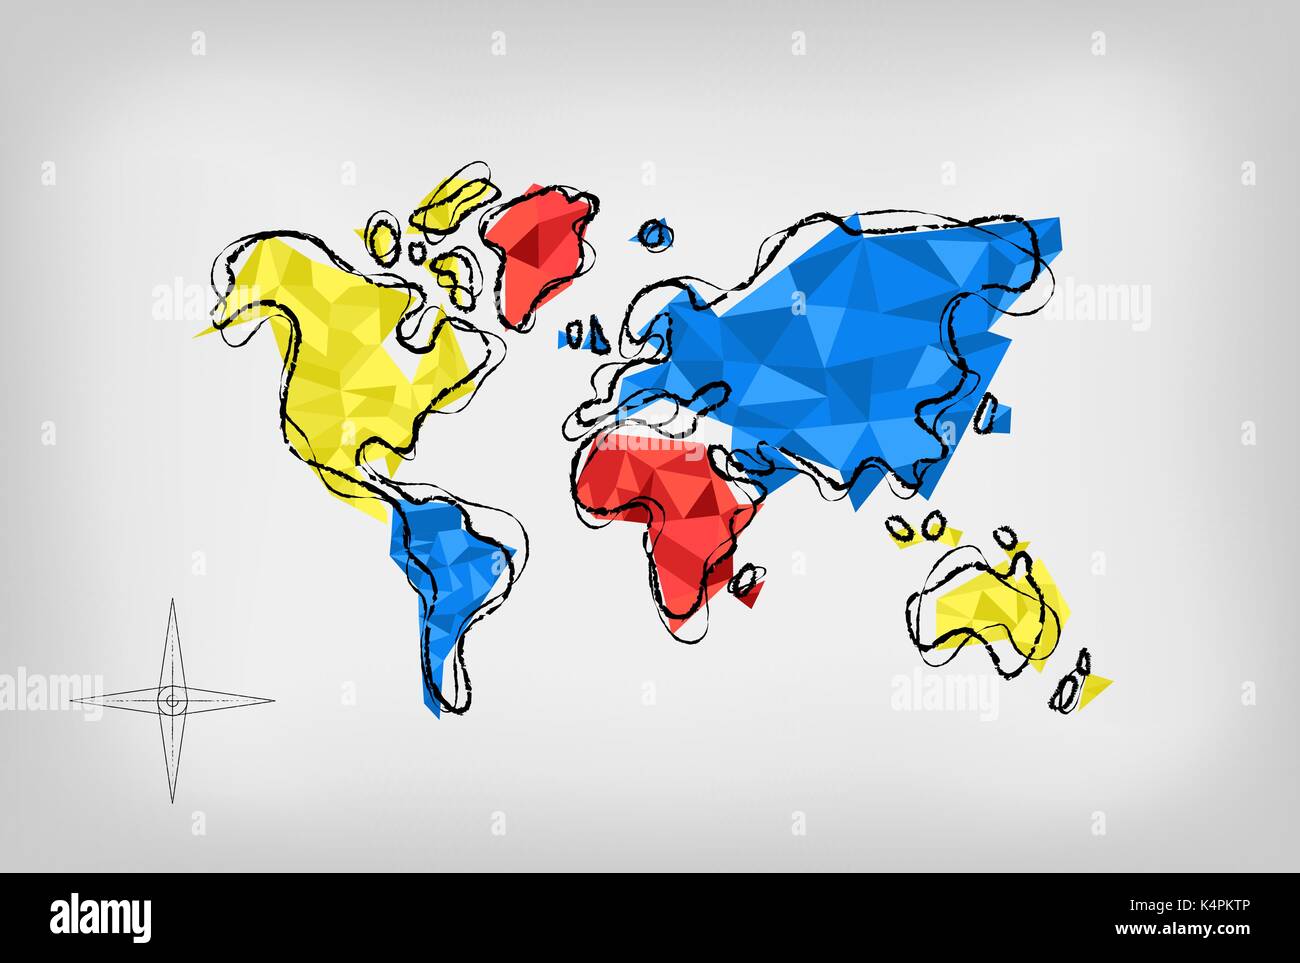 Moderne Welt Karte Abbildung: Vorlage in der Hand gezeichneten Stil, mit bunten abstrakte Low Poly geometrische Formen. EPS 10 Vektor. Stock Vektor